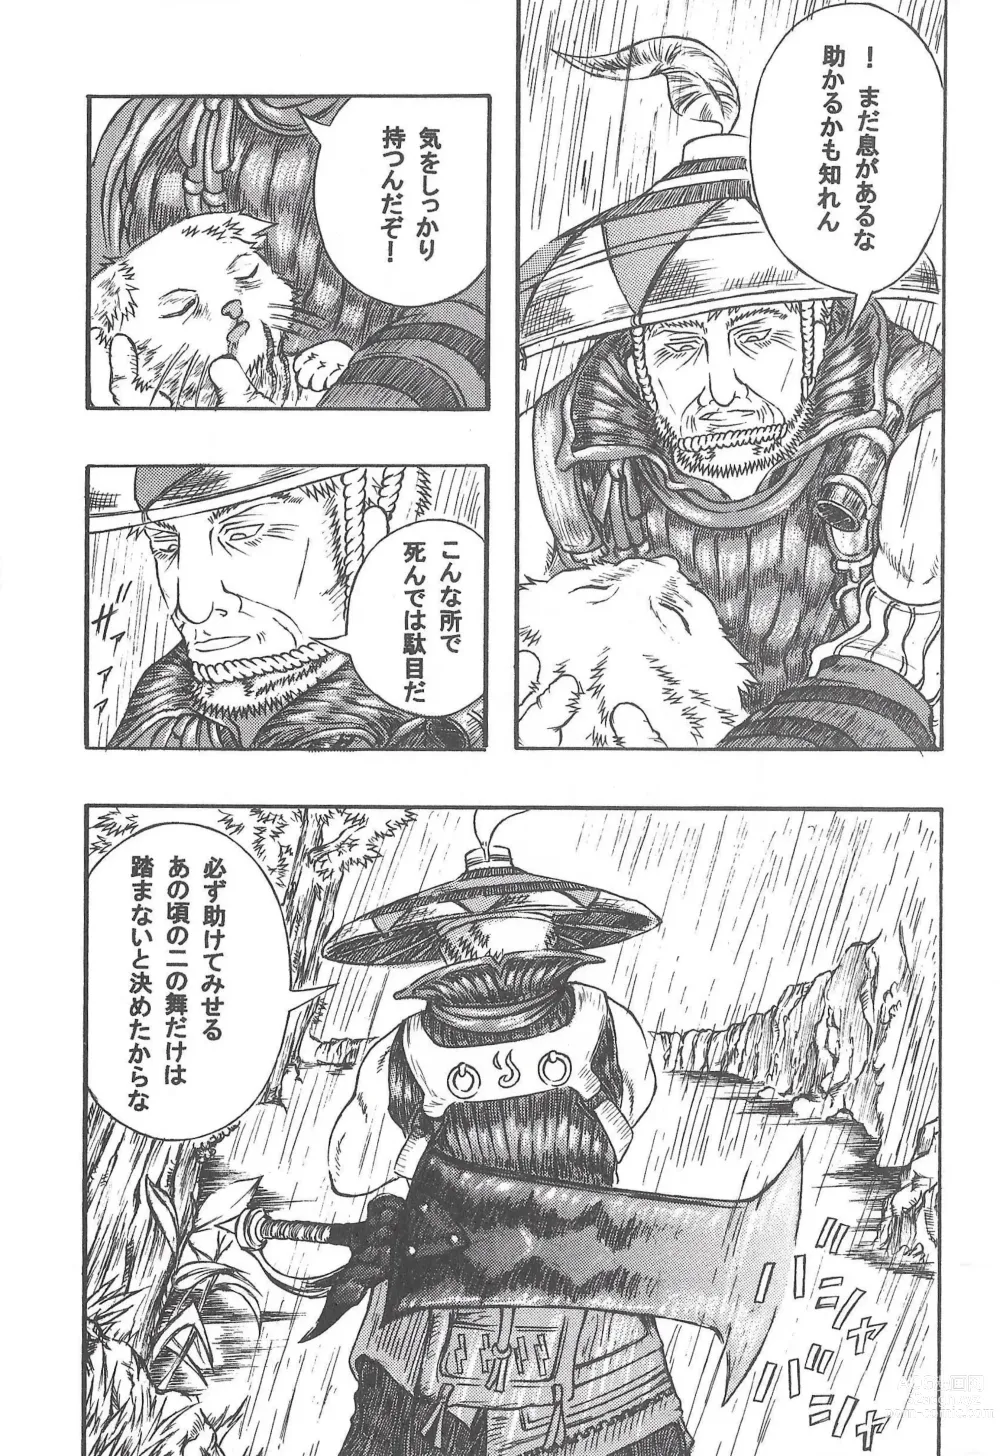 Page 6 of doujinshi Airu Monhun Dream